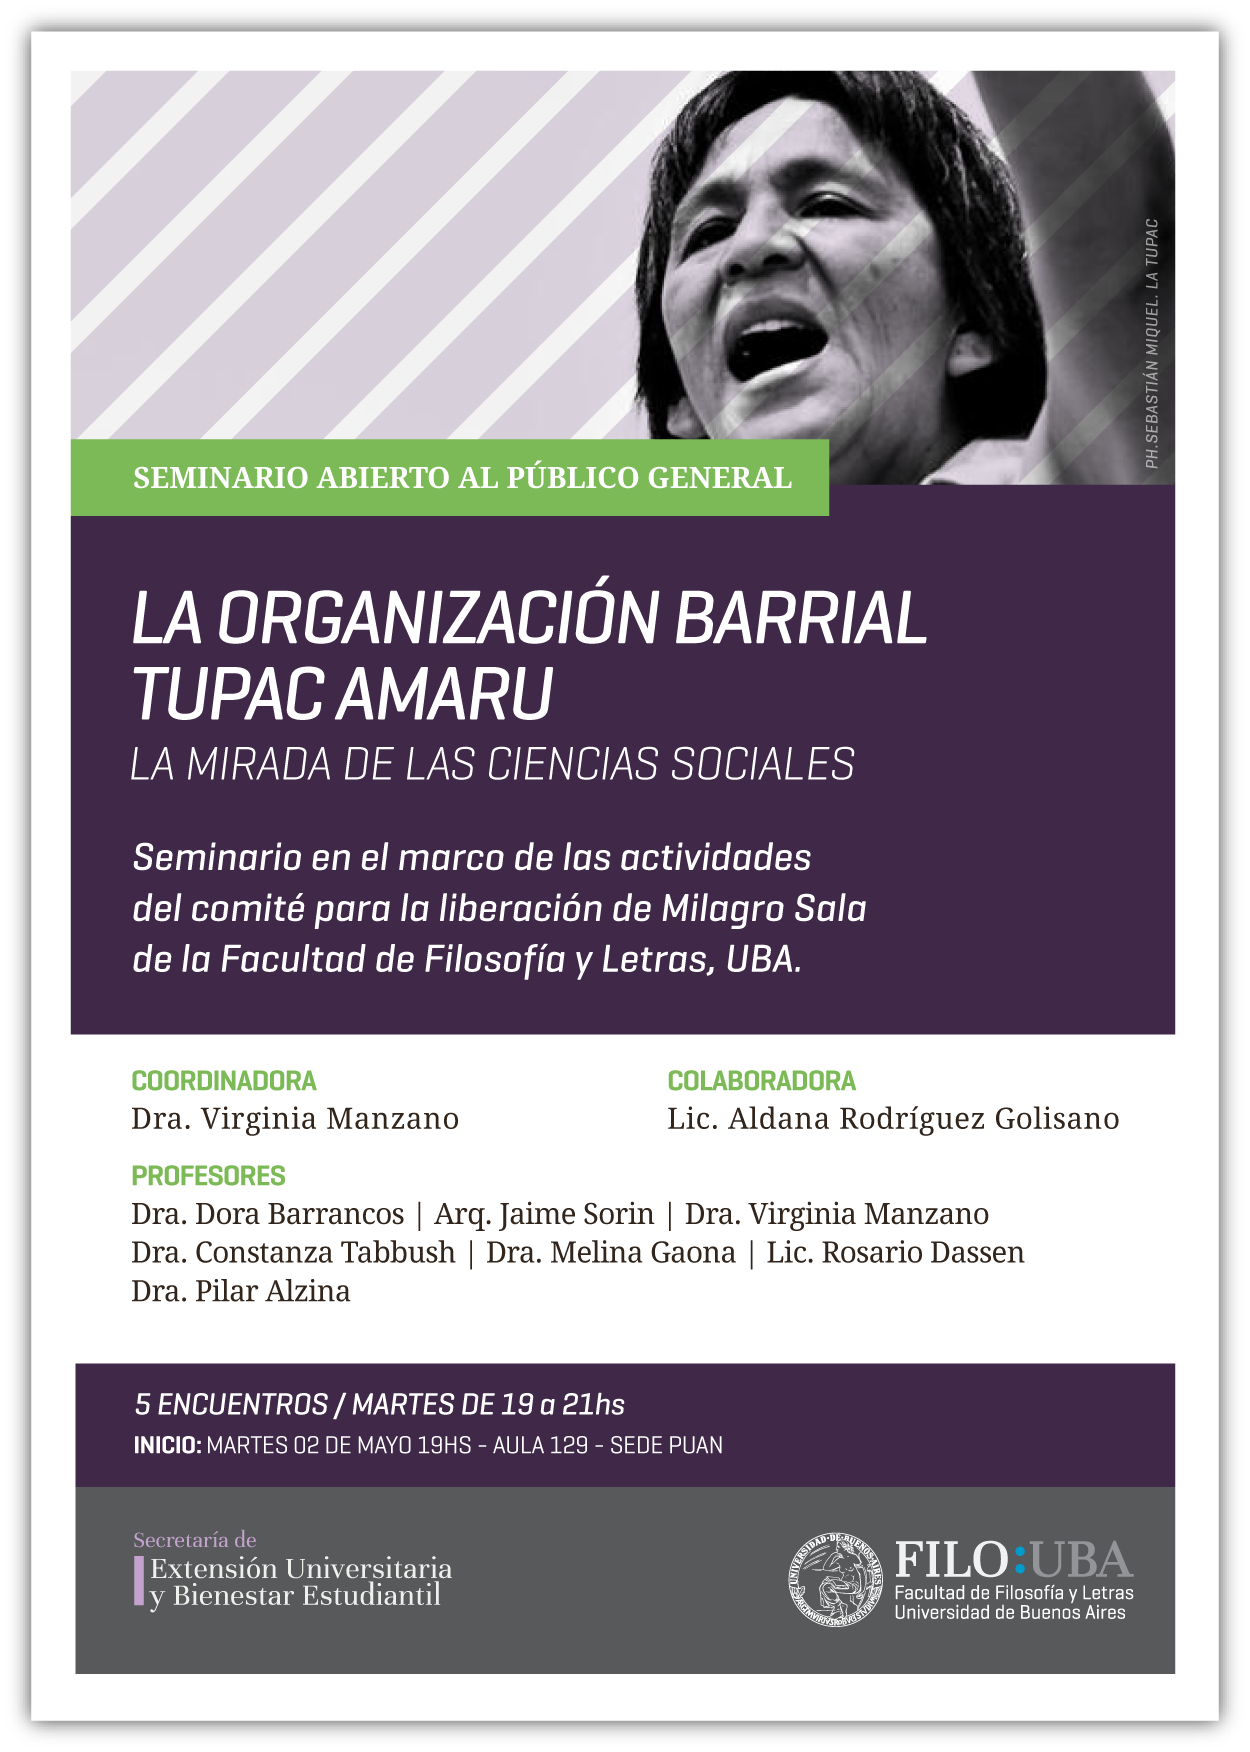 Flyer del Seminario Libre de la Túpac Amaru, con una imagen de Milagro Sala y todos los datos de los encuentros, ya descriptos en el cuerpo de la noticia.